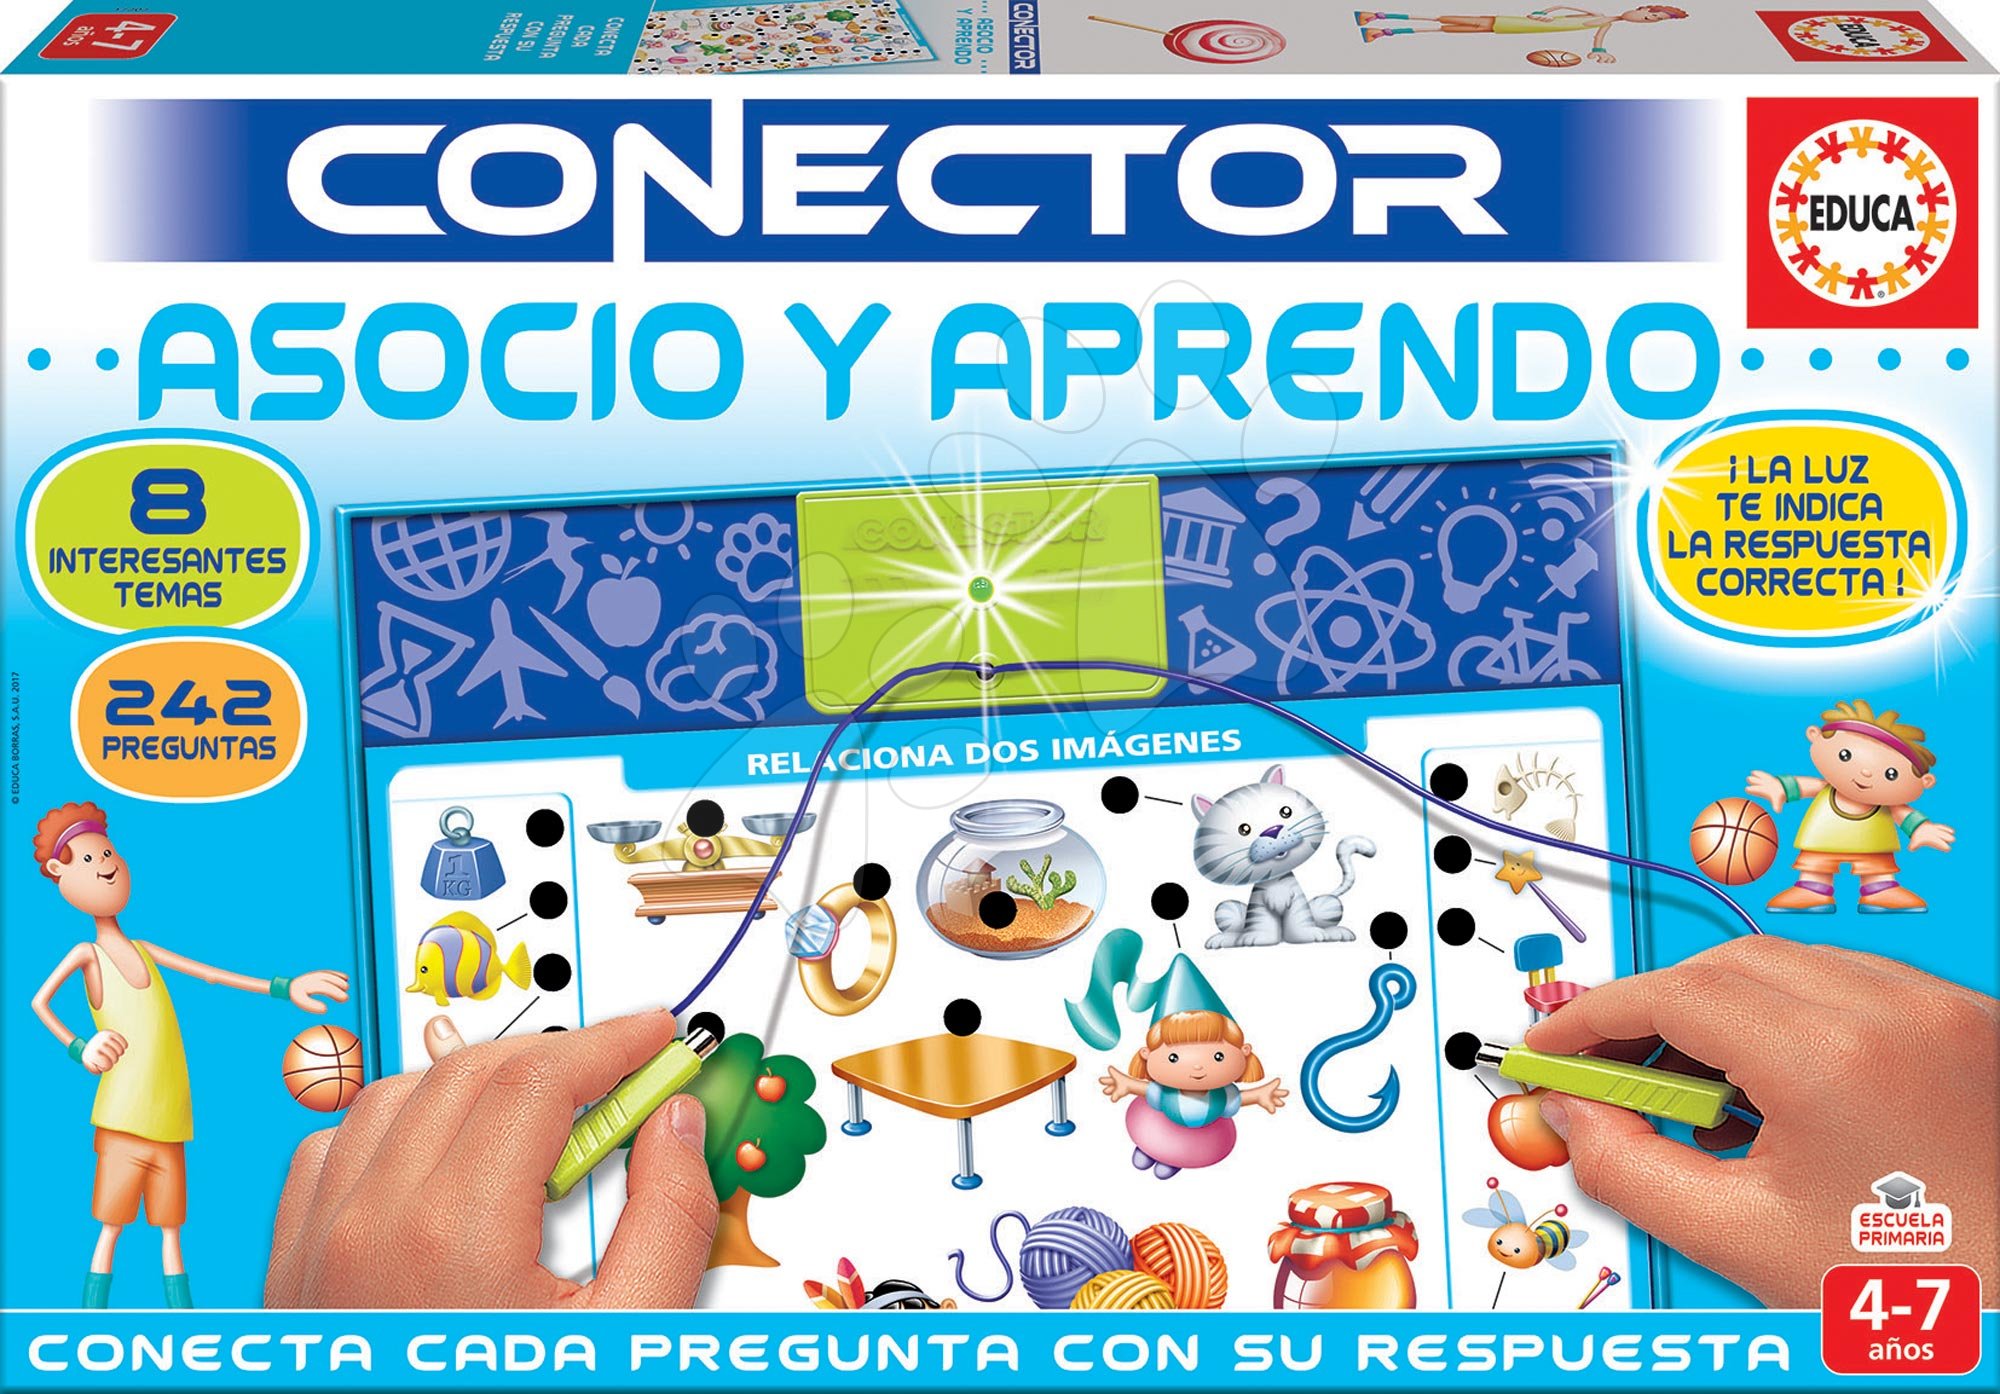 Társasjáték Conector Társítás & Tanulás Educa 242 kérdés spanyol nyelvű 4-7 éves korosztálynak